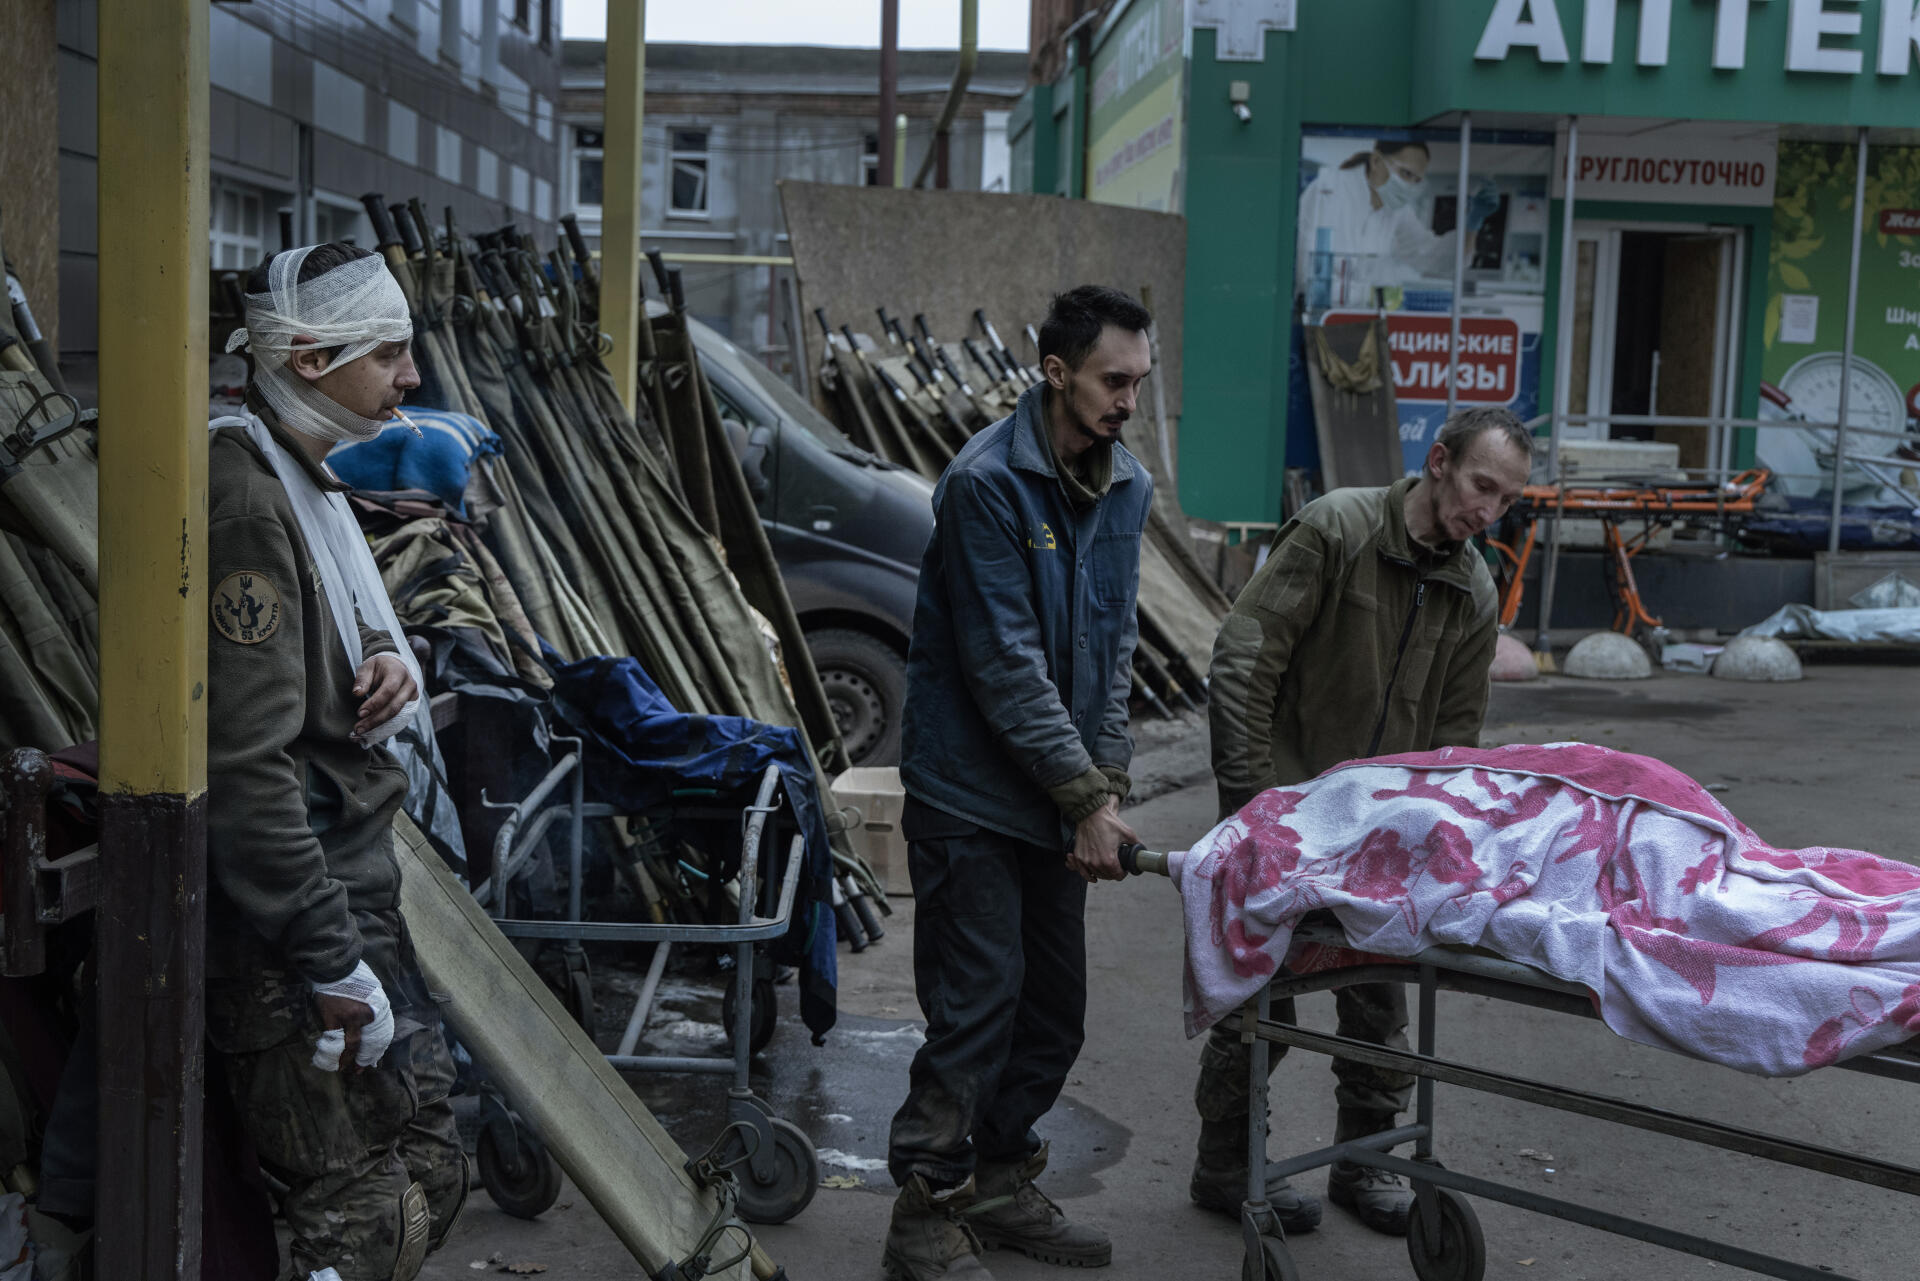 Des soldats morts ou blessés lors de la bataille de Bakhmout arrivent au poste avancé de soins, à Bakhmout, en Ukraine, le 11 novembre 2022.

